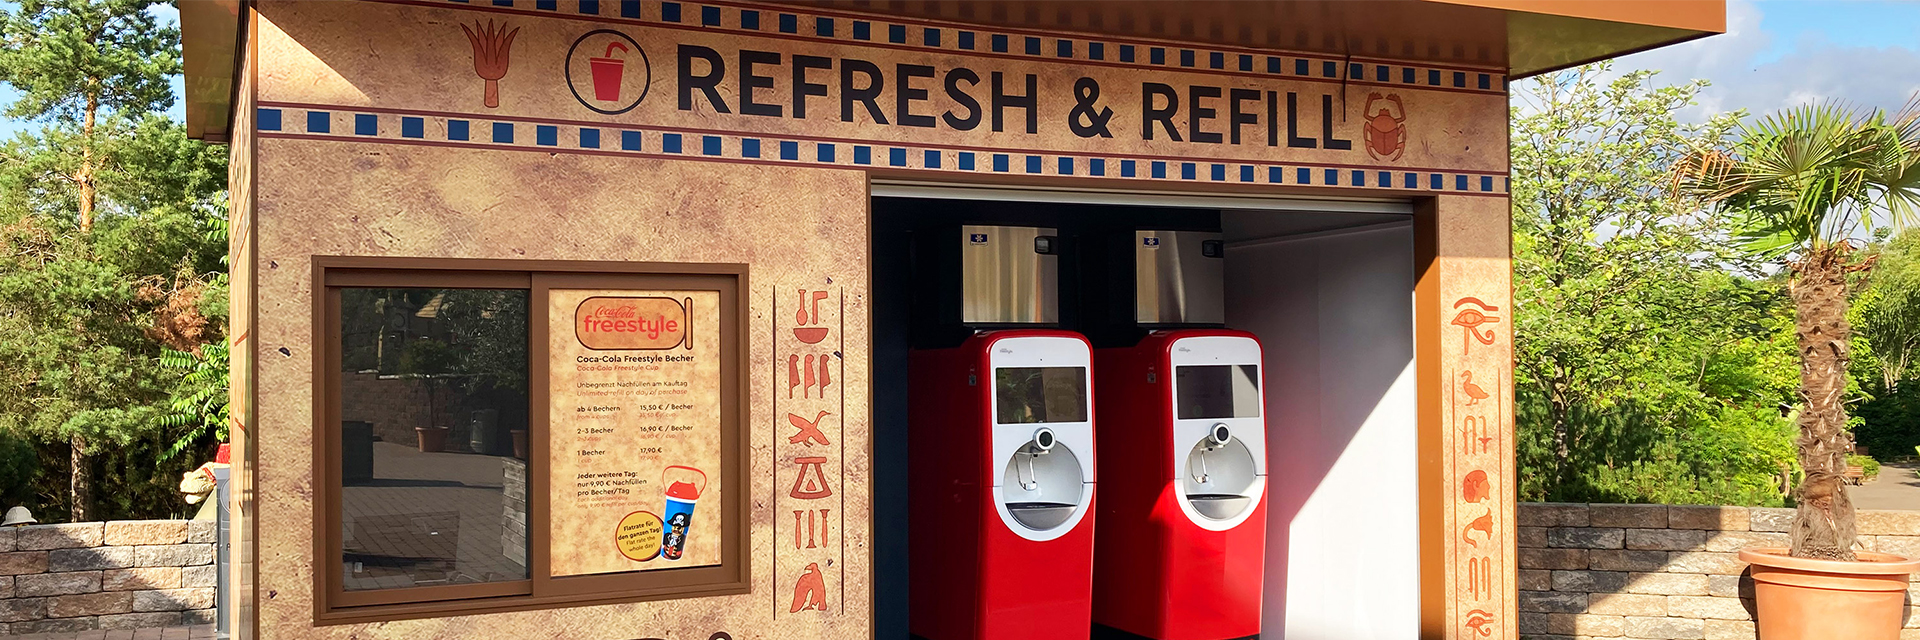 Refresh & Refill - Coca-Cola freestyle